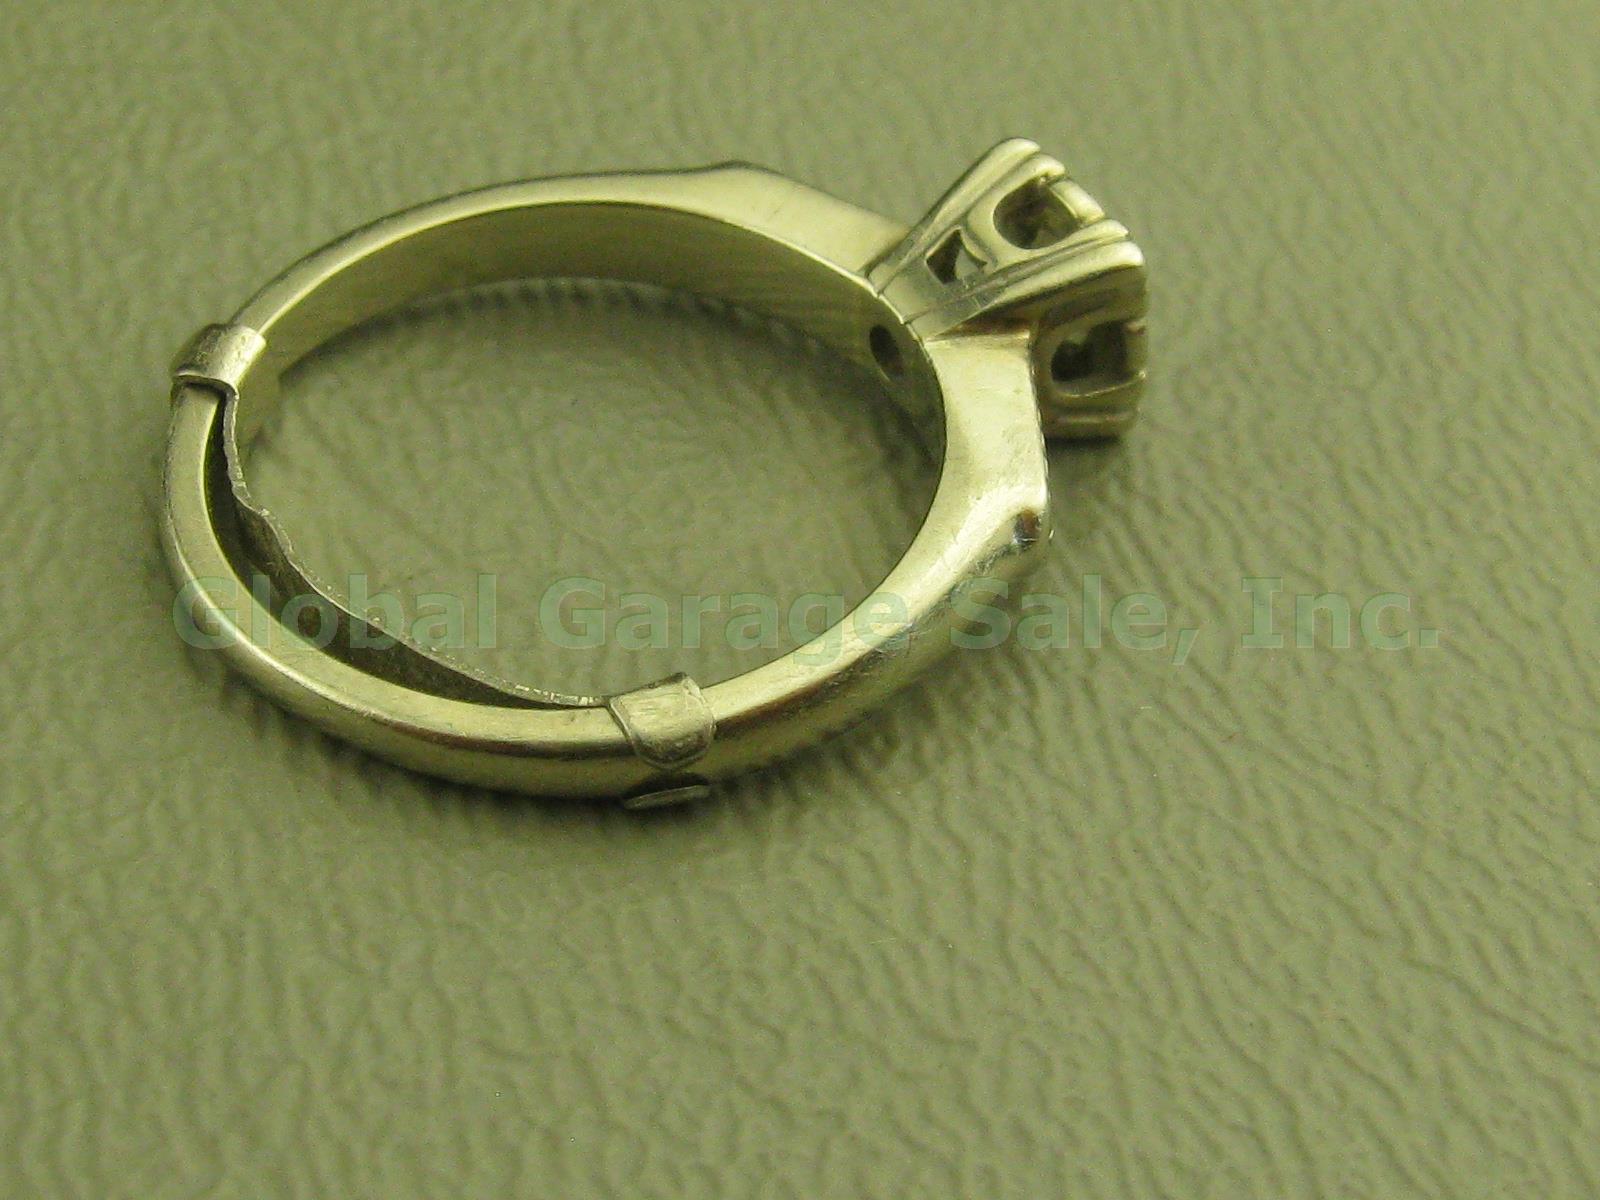 Vtg 14k White Gold Diamond Solitaire Engagement Ring Band W/Insert 4.25-4.5 2.9g 4